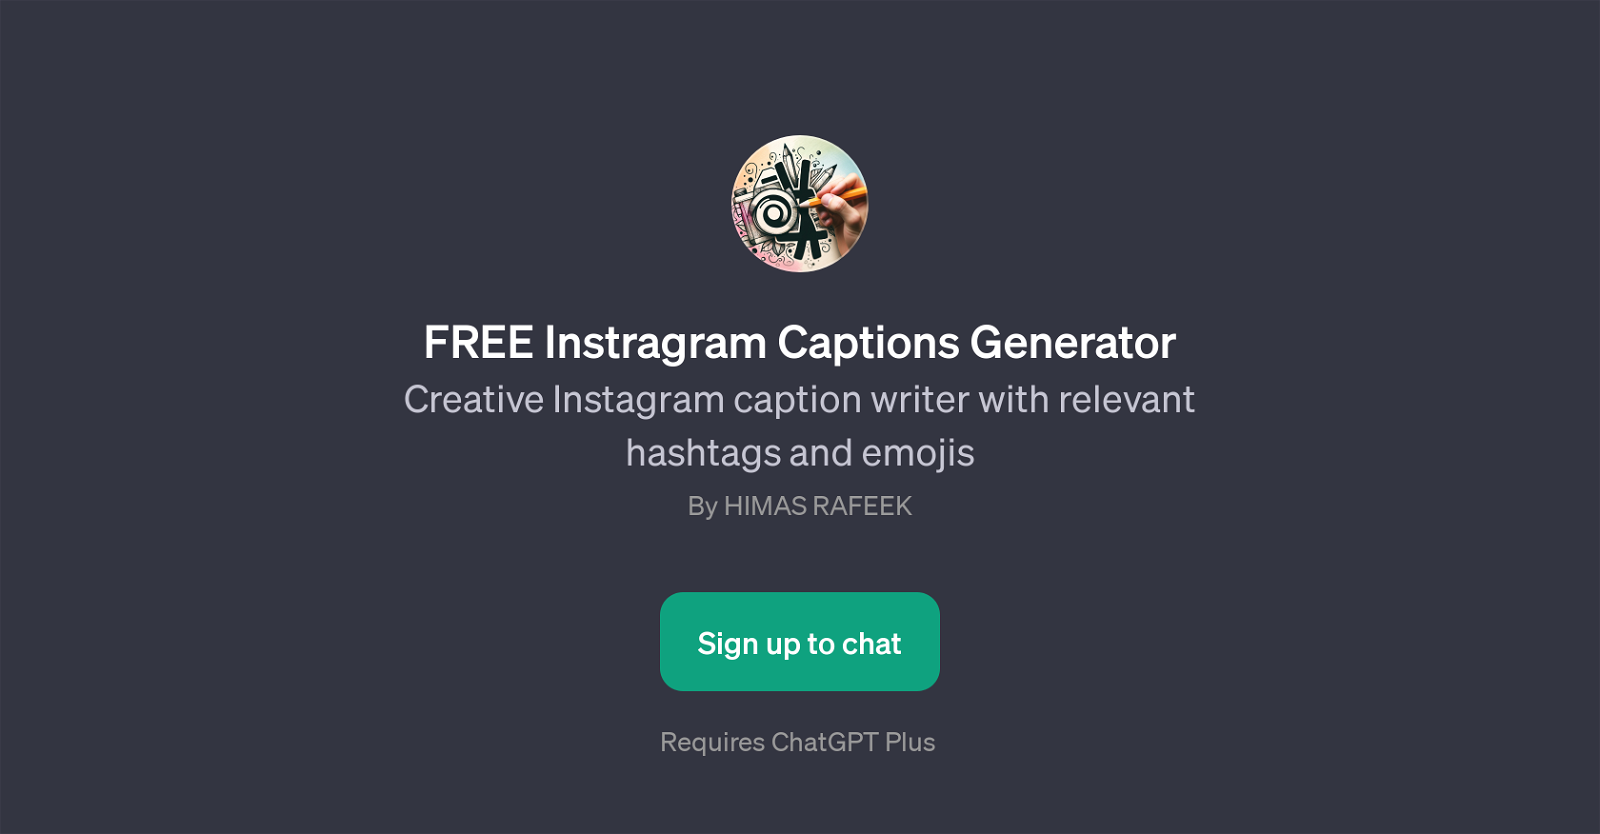 FREE Instagram Captions Generator website